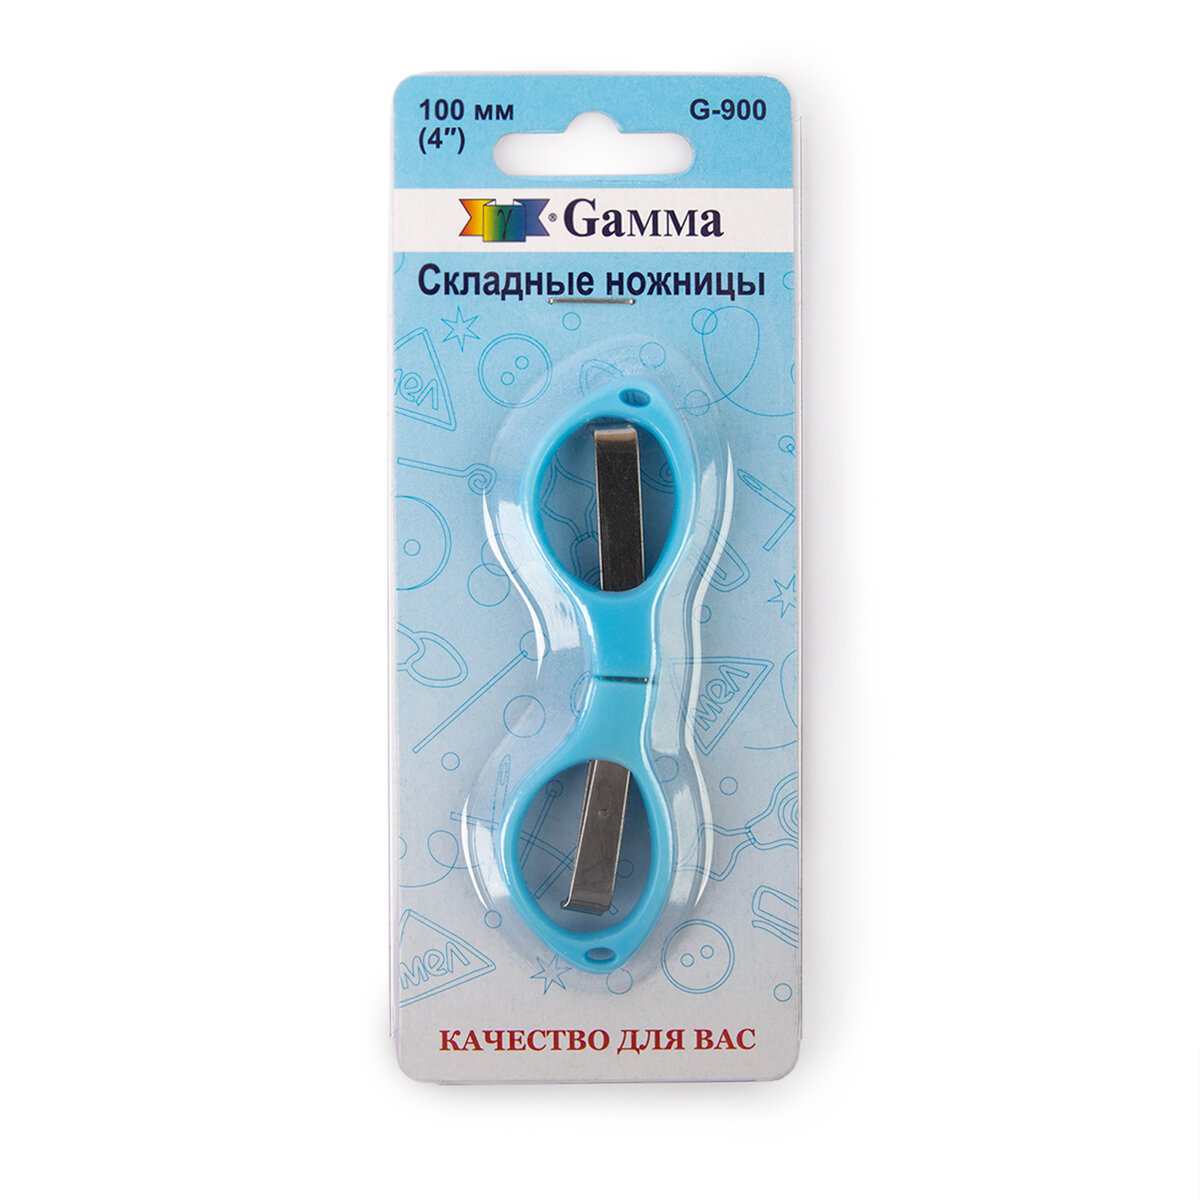 Ножницы Gamma G-900 для рукоделия складные в блистере 100 мм голубые